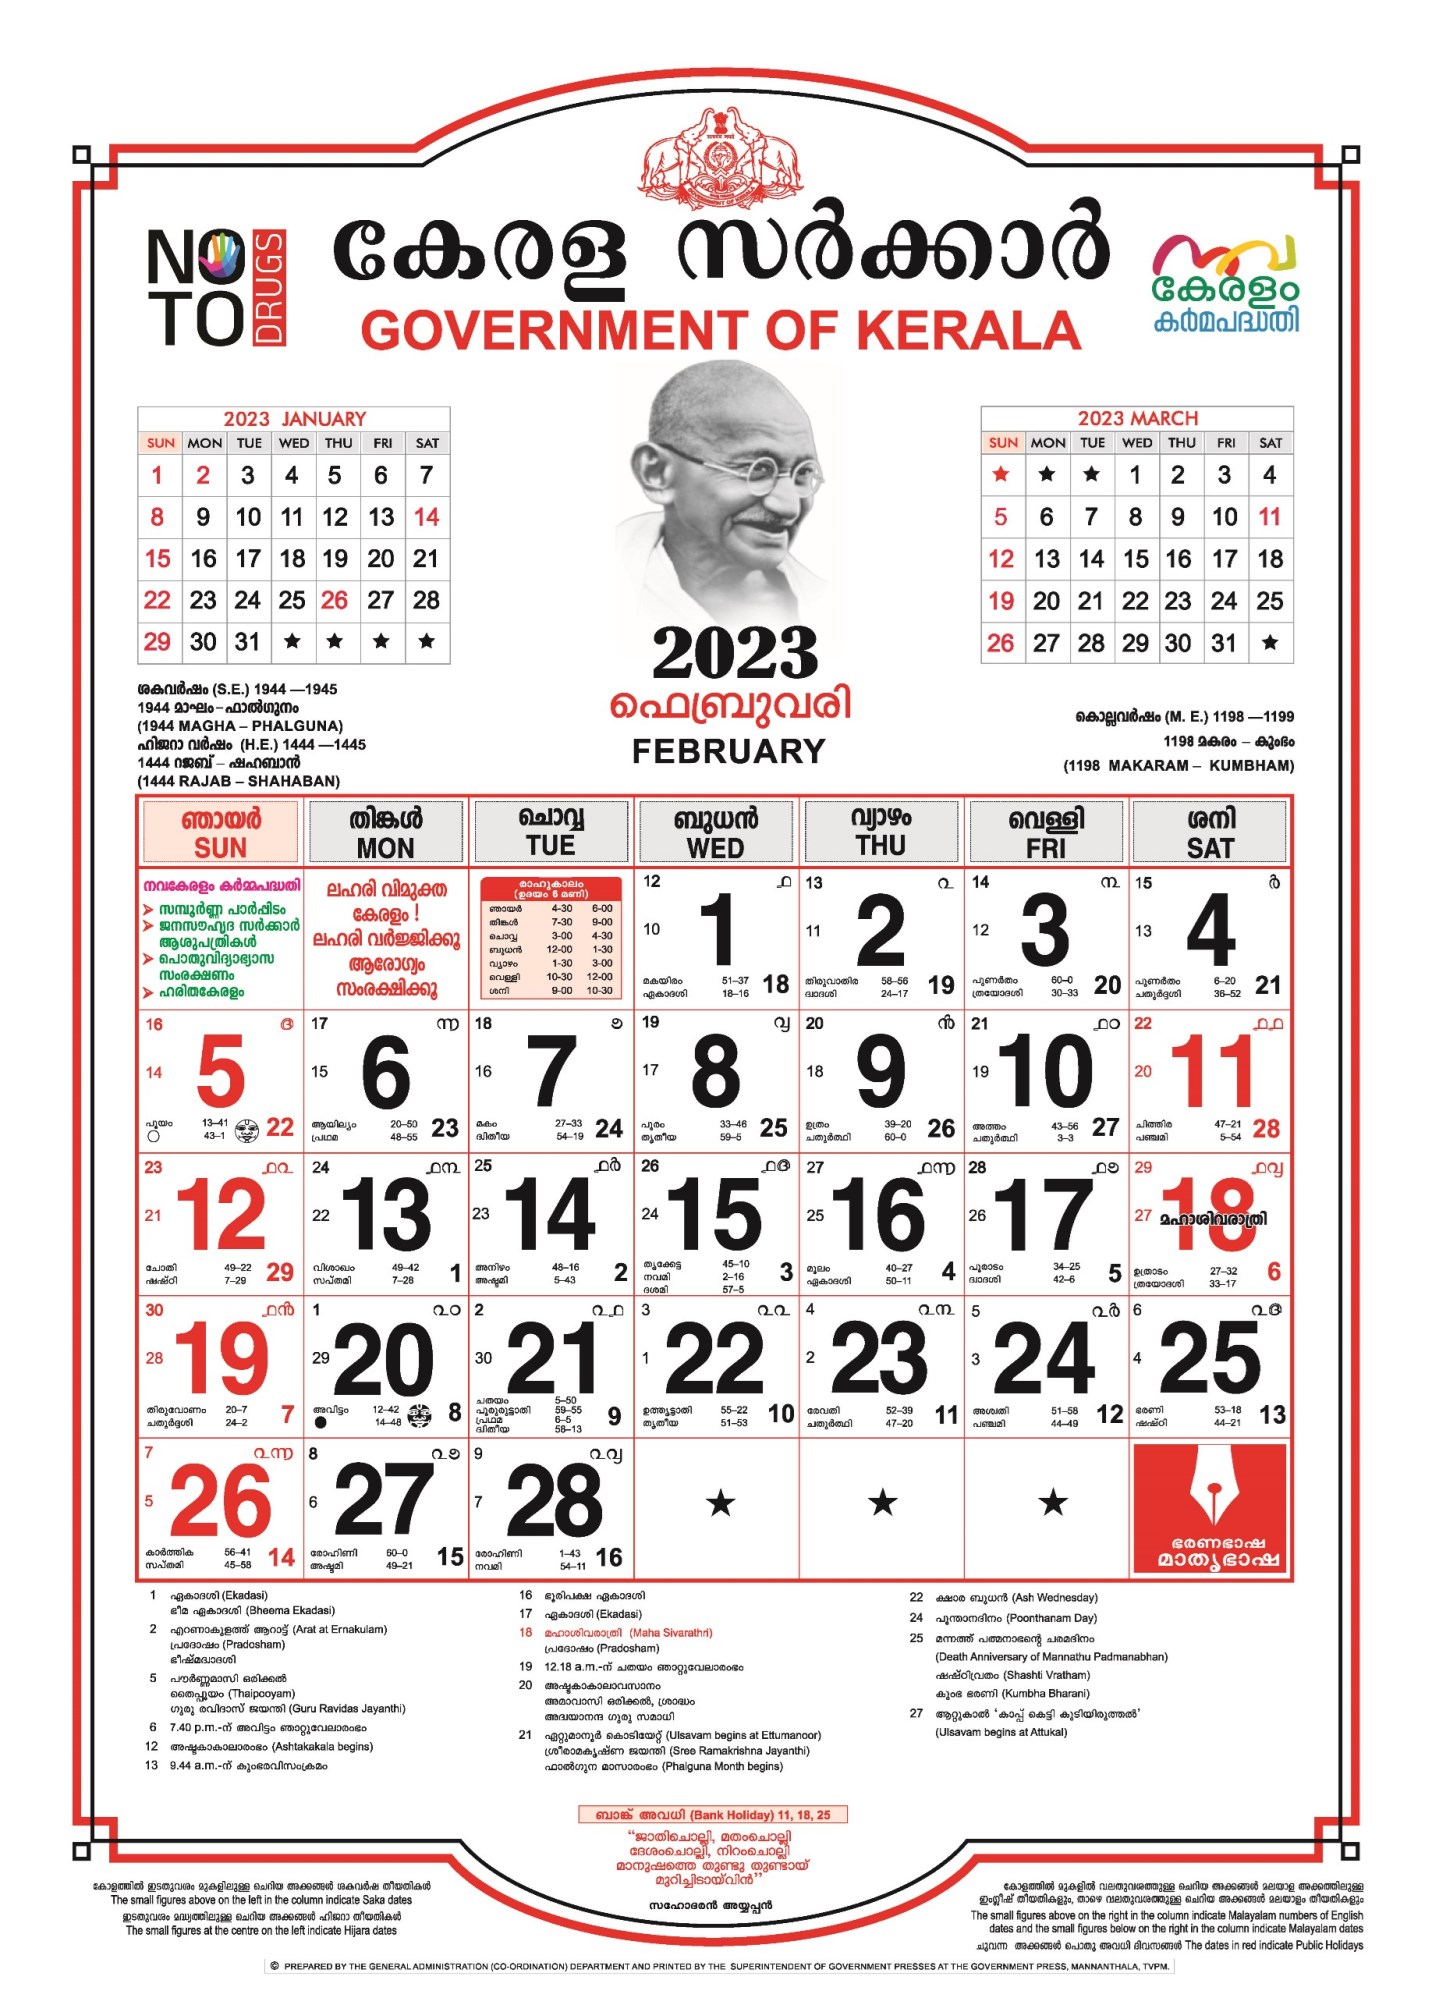 Kerala Government Calendar 2023 PDF, Kerala Govt Holidays and Festivals